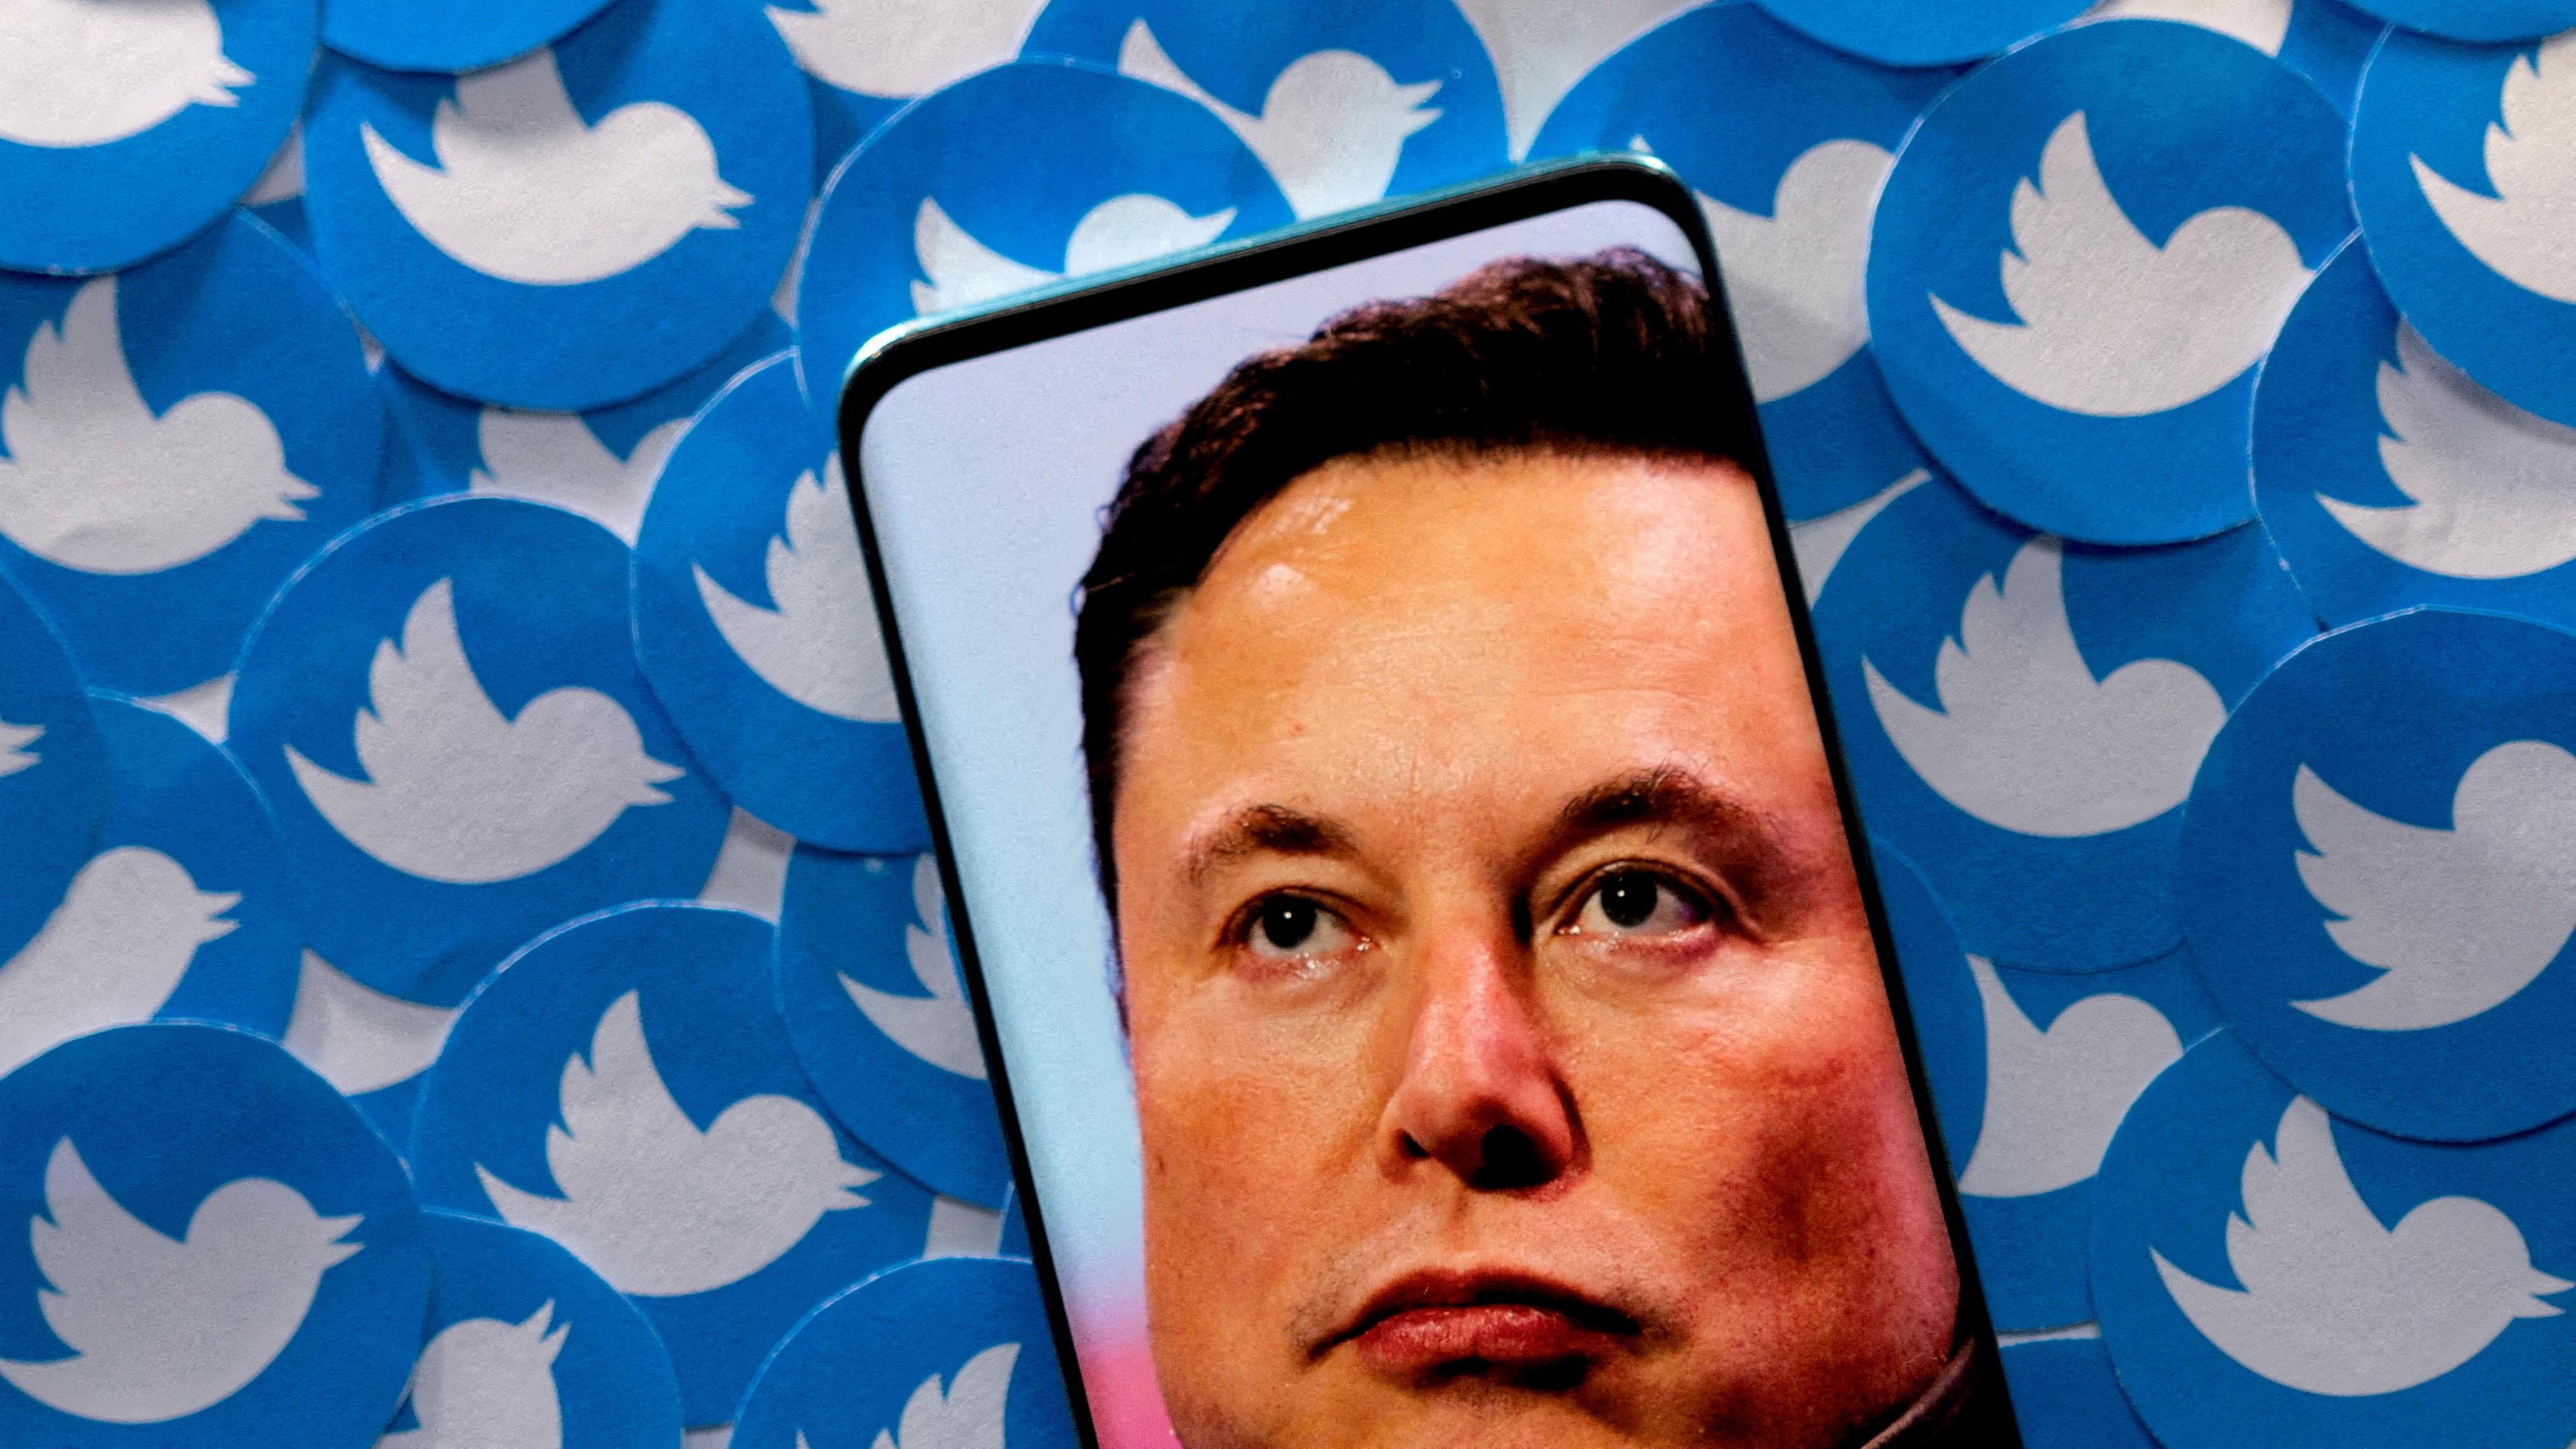 Eine Fotomontage zeigt Elon Musk auf einem Handy-Display vor einem Hintergrund aus Twitter-Symbolen.